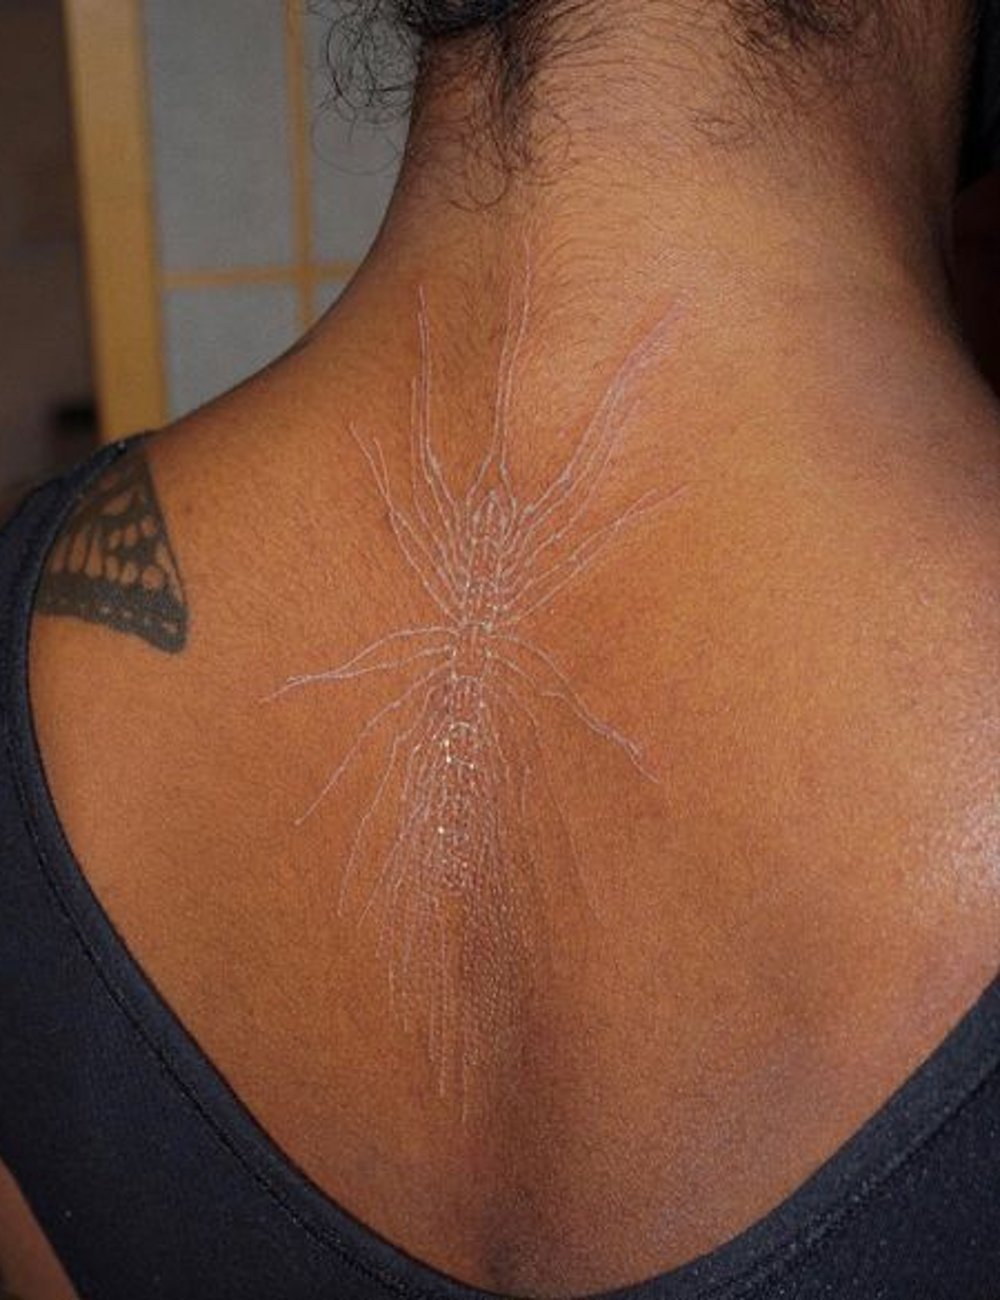 Tatuagem - tattoo - tatuagem em pele negra - pele - corpo - https://stealthelook.com.br